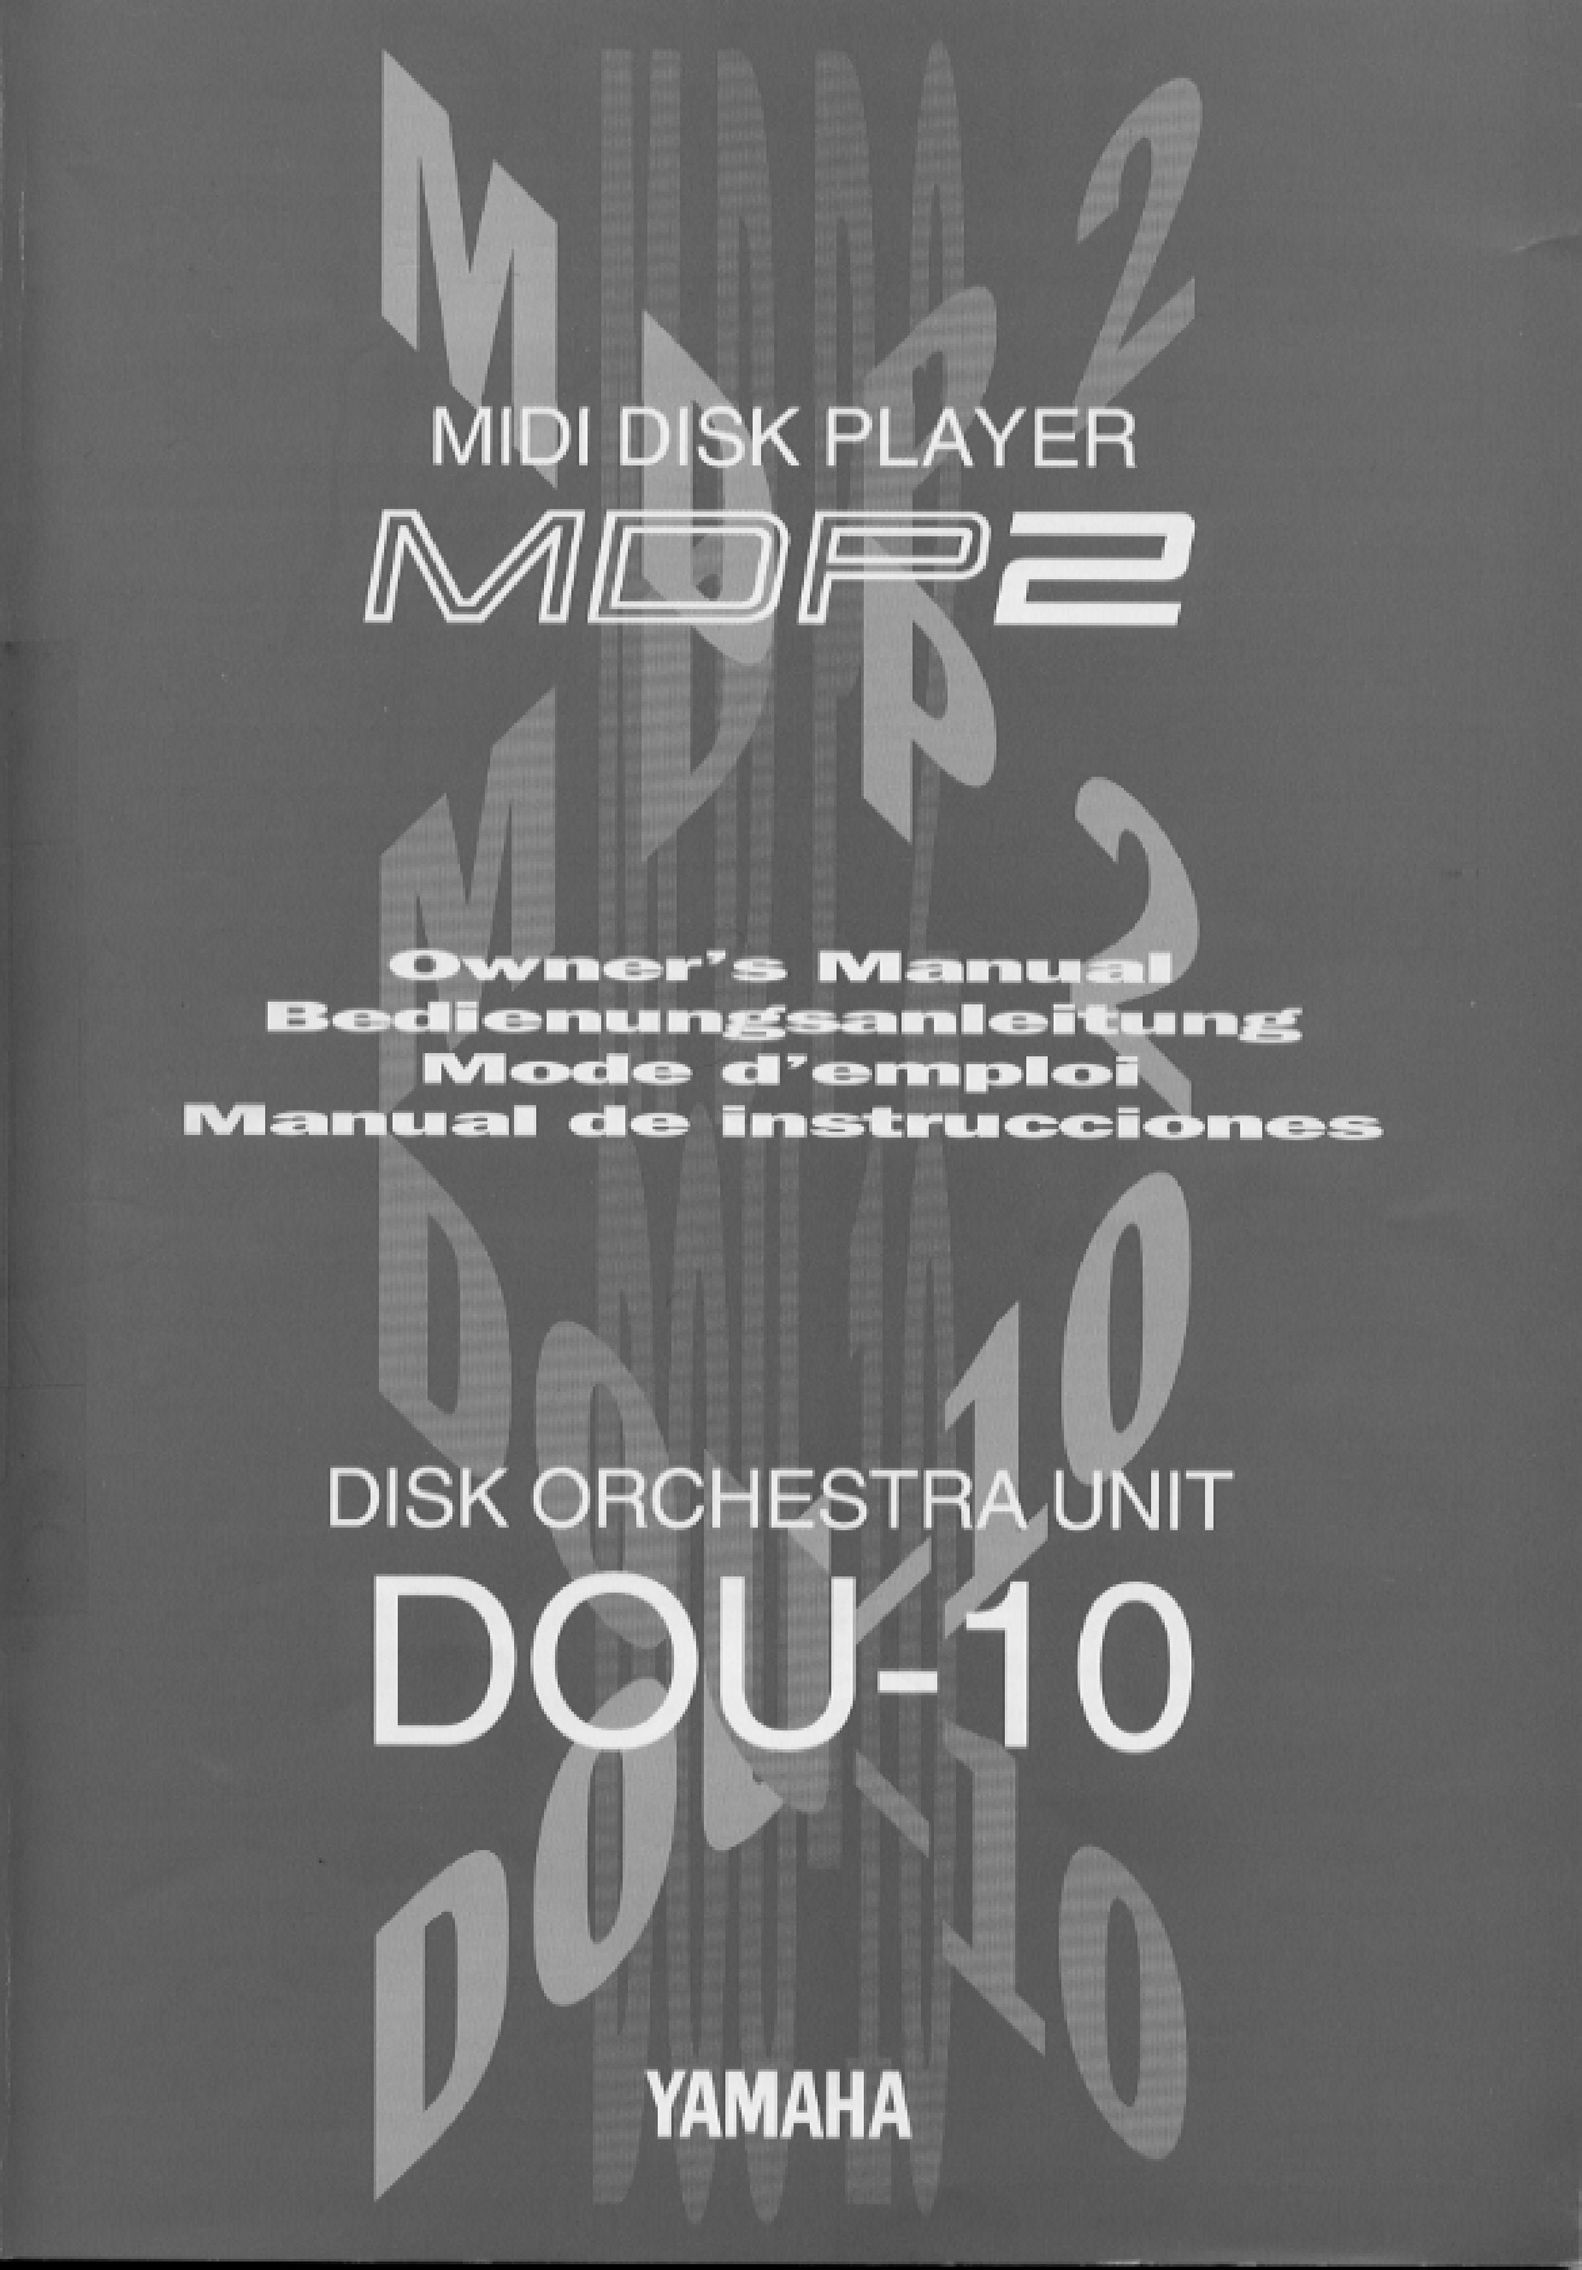 Yamaha MDP2 MiniDisc Player User Manual